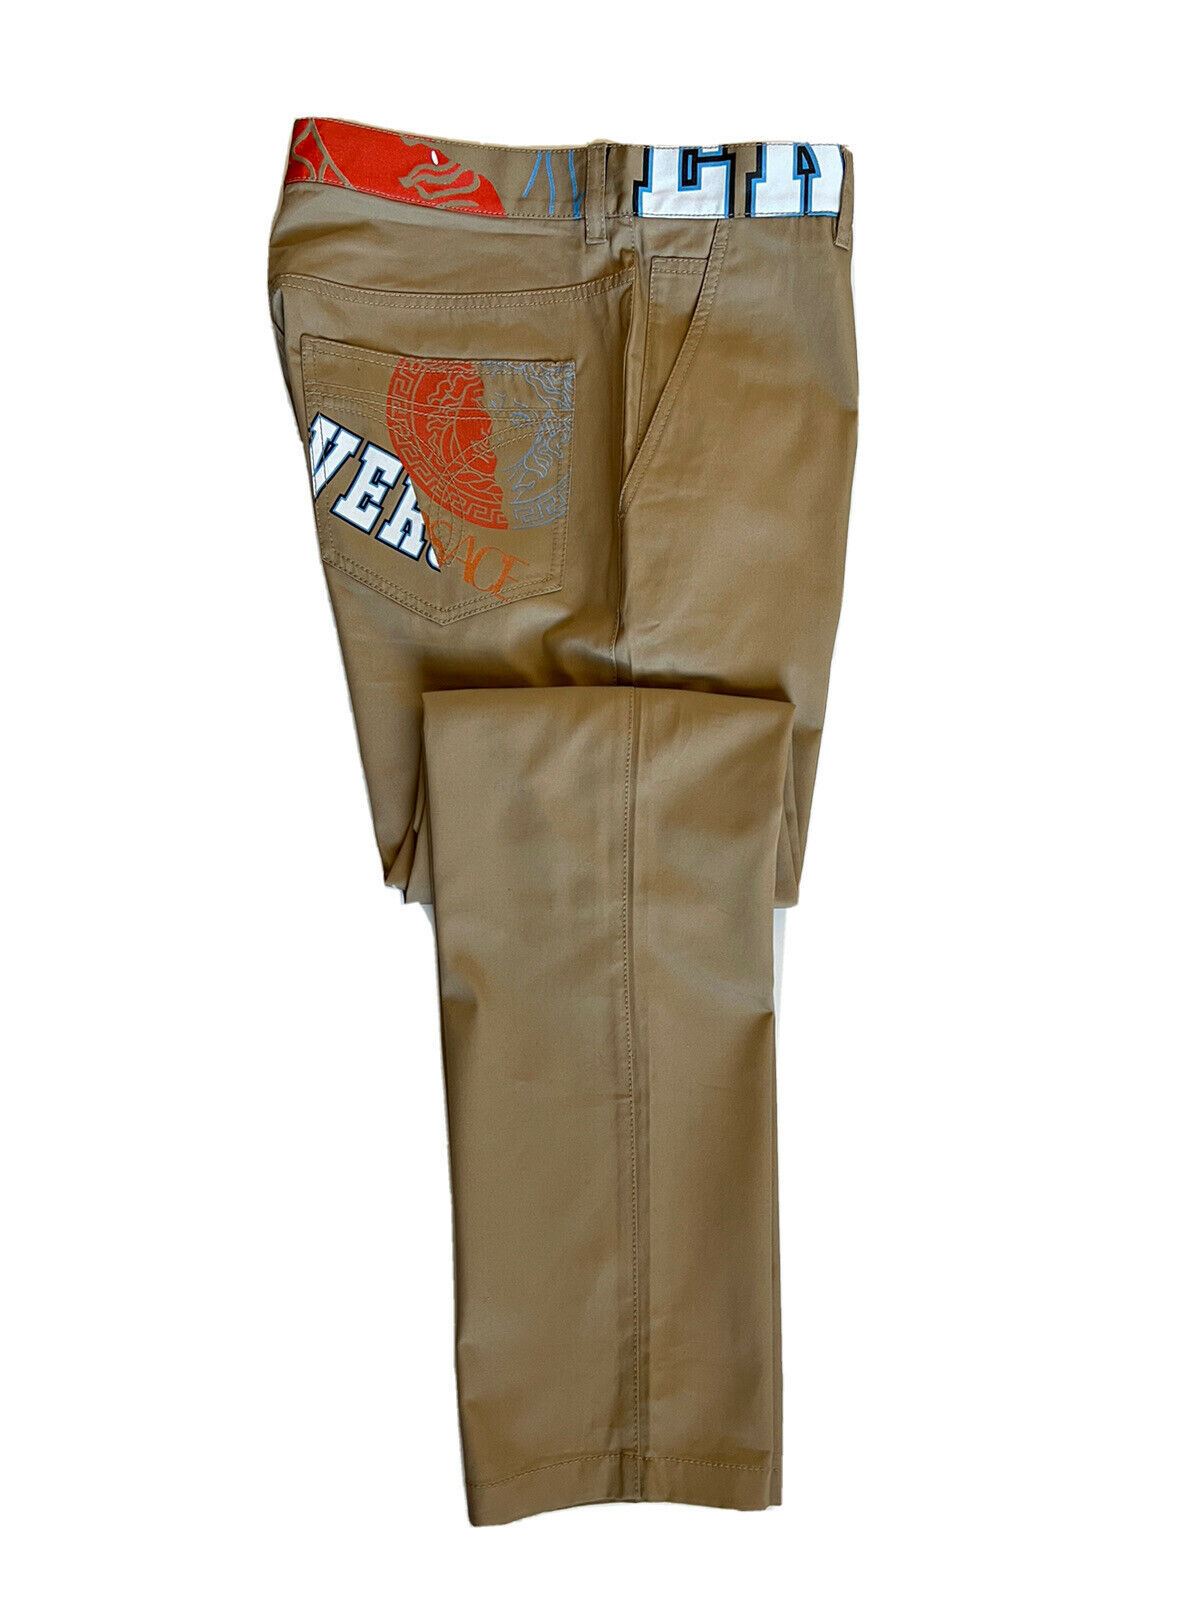 Мужские коричневые брюки Versace NWT 725 долларов США (48 евро), производство Италия A85221